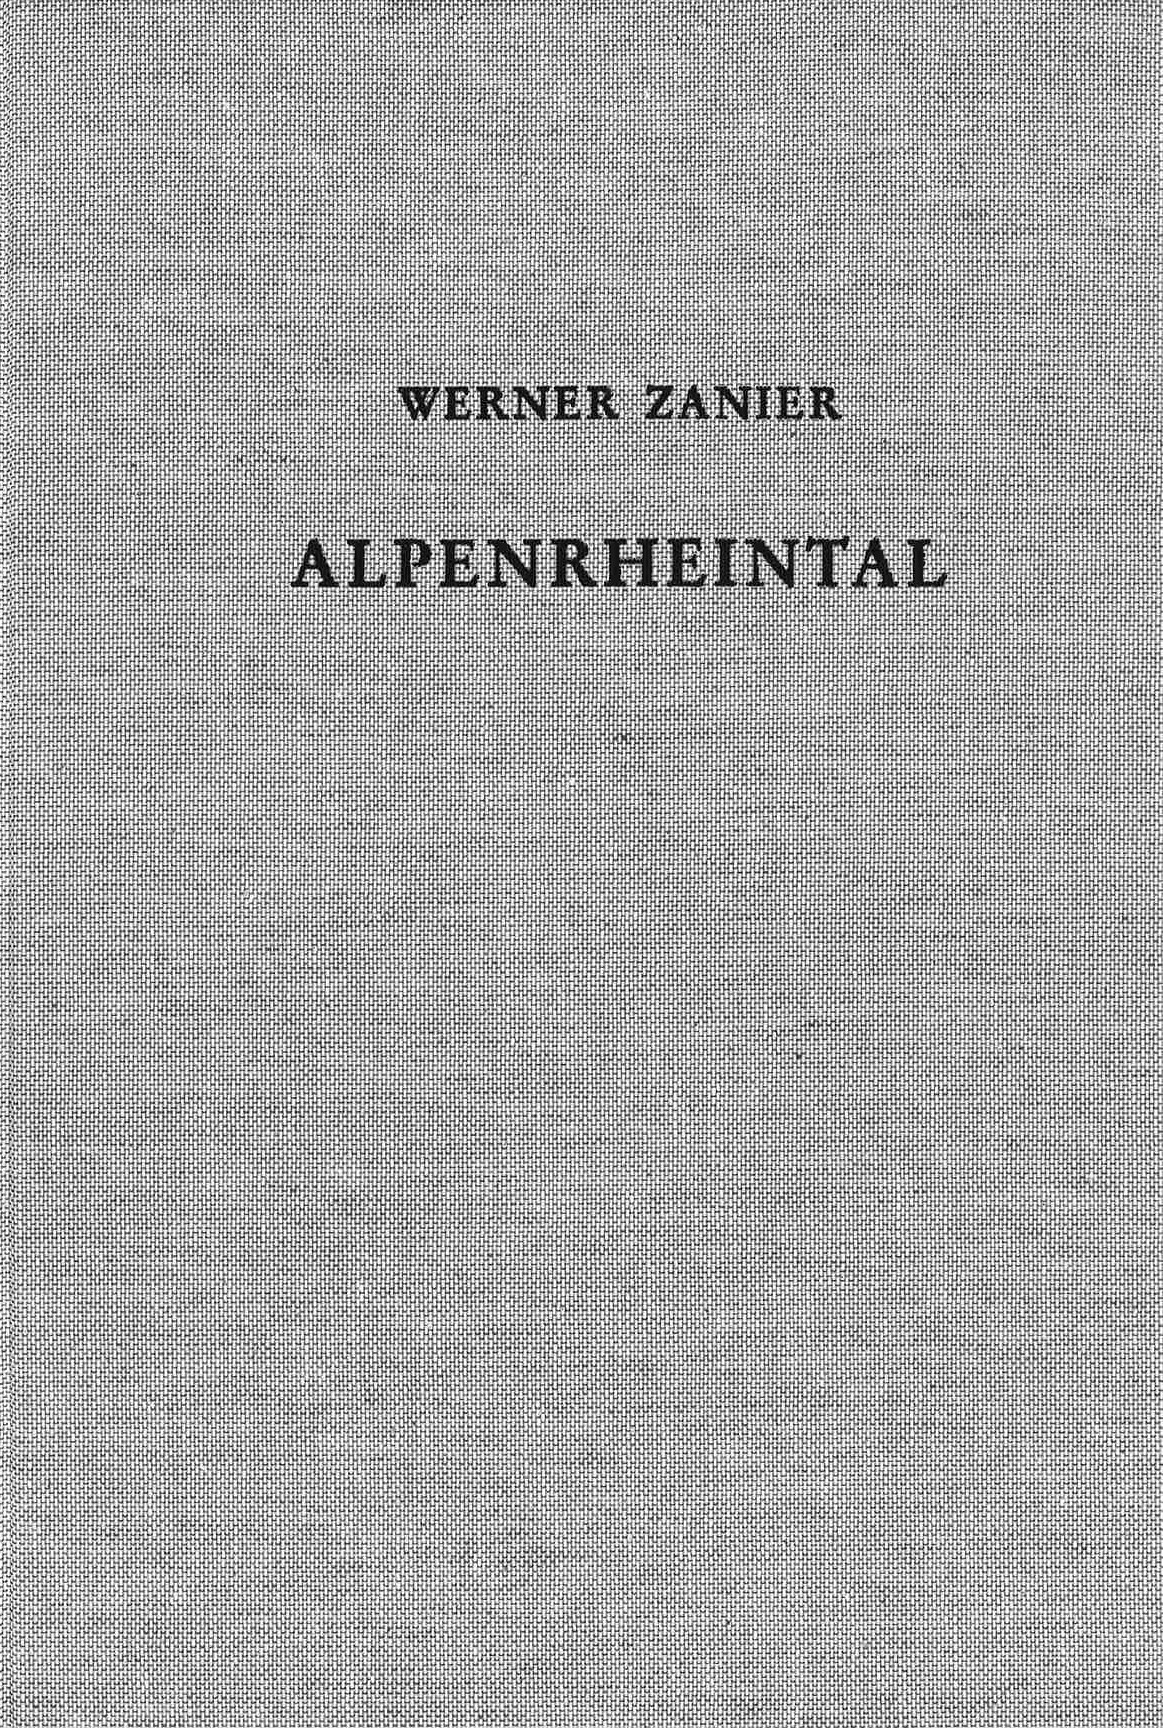 Cover: Zanier, Werner, Das Alpenrheintal in den Jahrzehnten um Christi Geburt